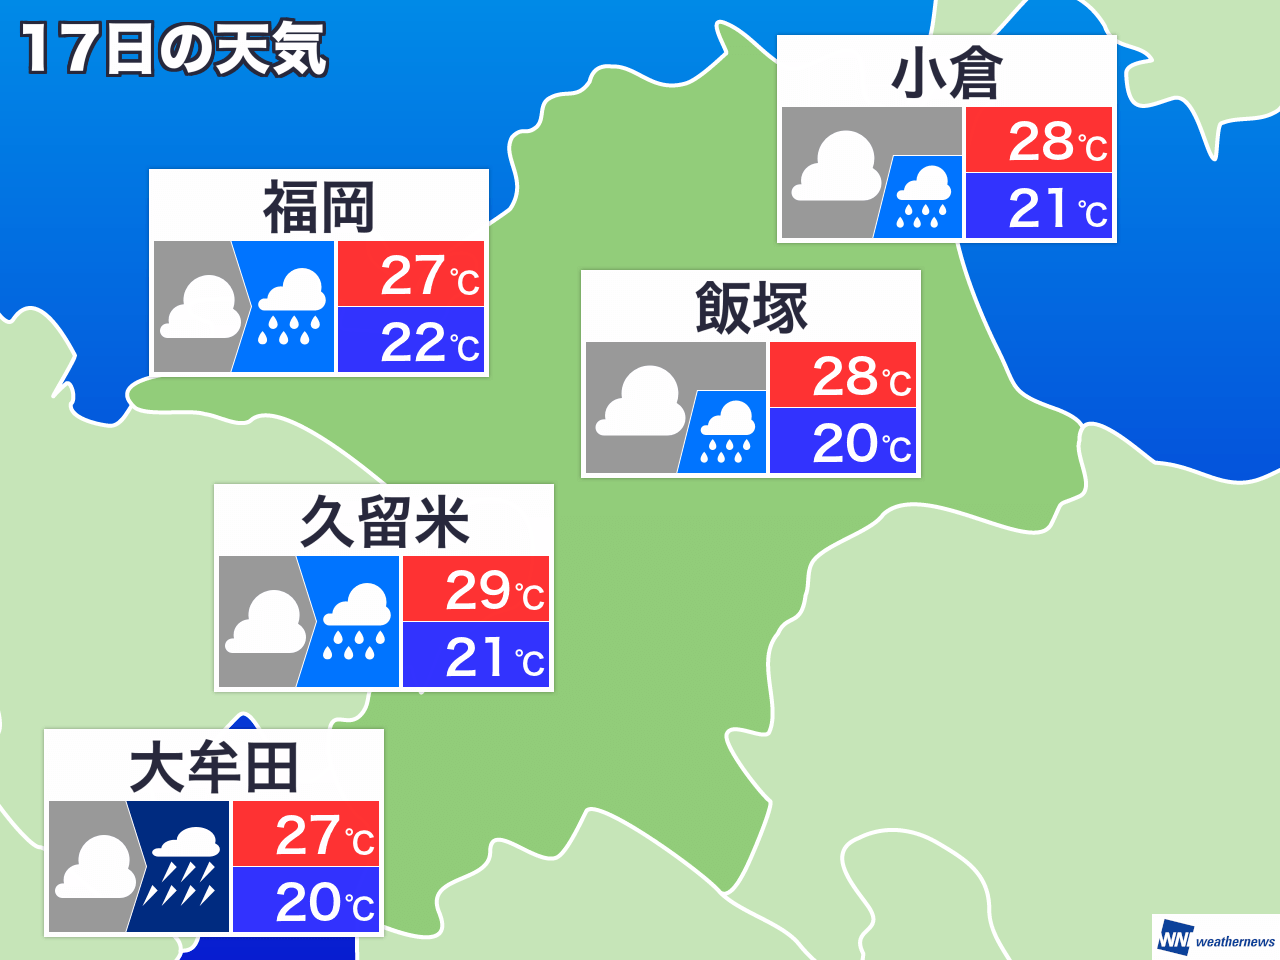 1月31日 金 福岡県の明日の天気 ウェザーニュース